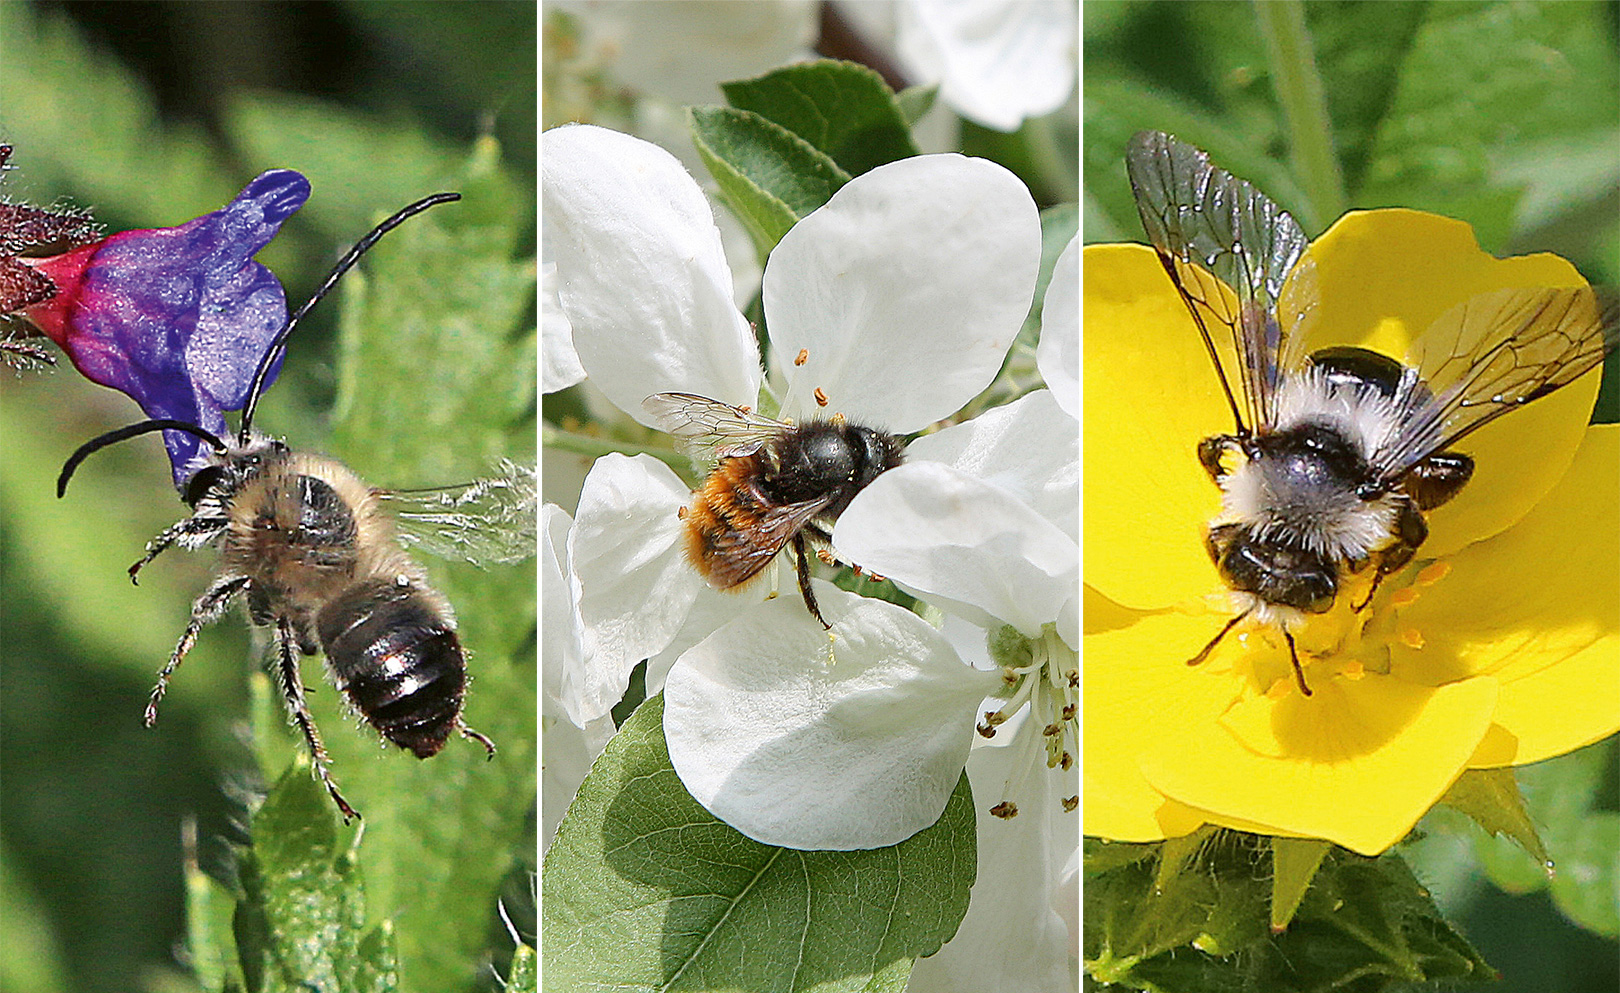 De gauche à droite, vous pouvez voir trois espèces d'abeilles sauvages dans la nature. Abeille longicorne, abeille maçonne, abeille à fourrure commune